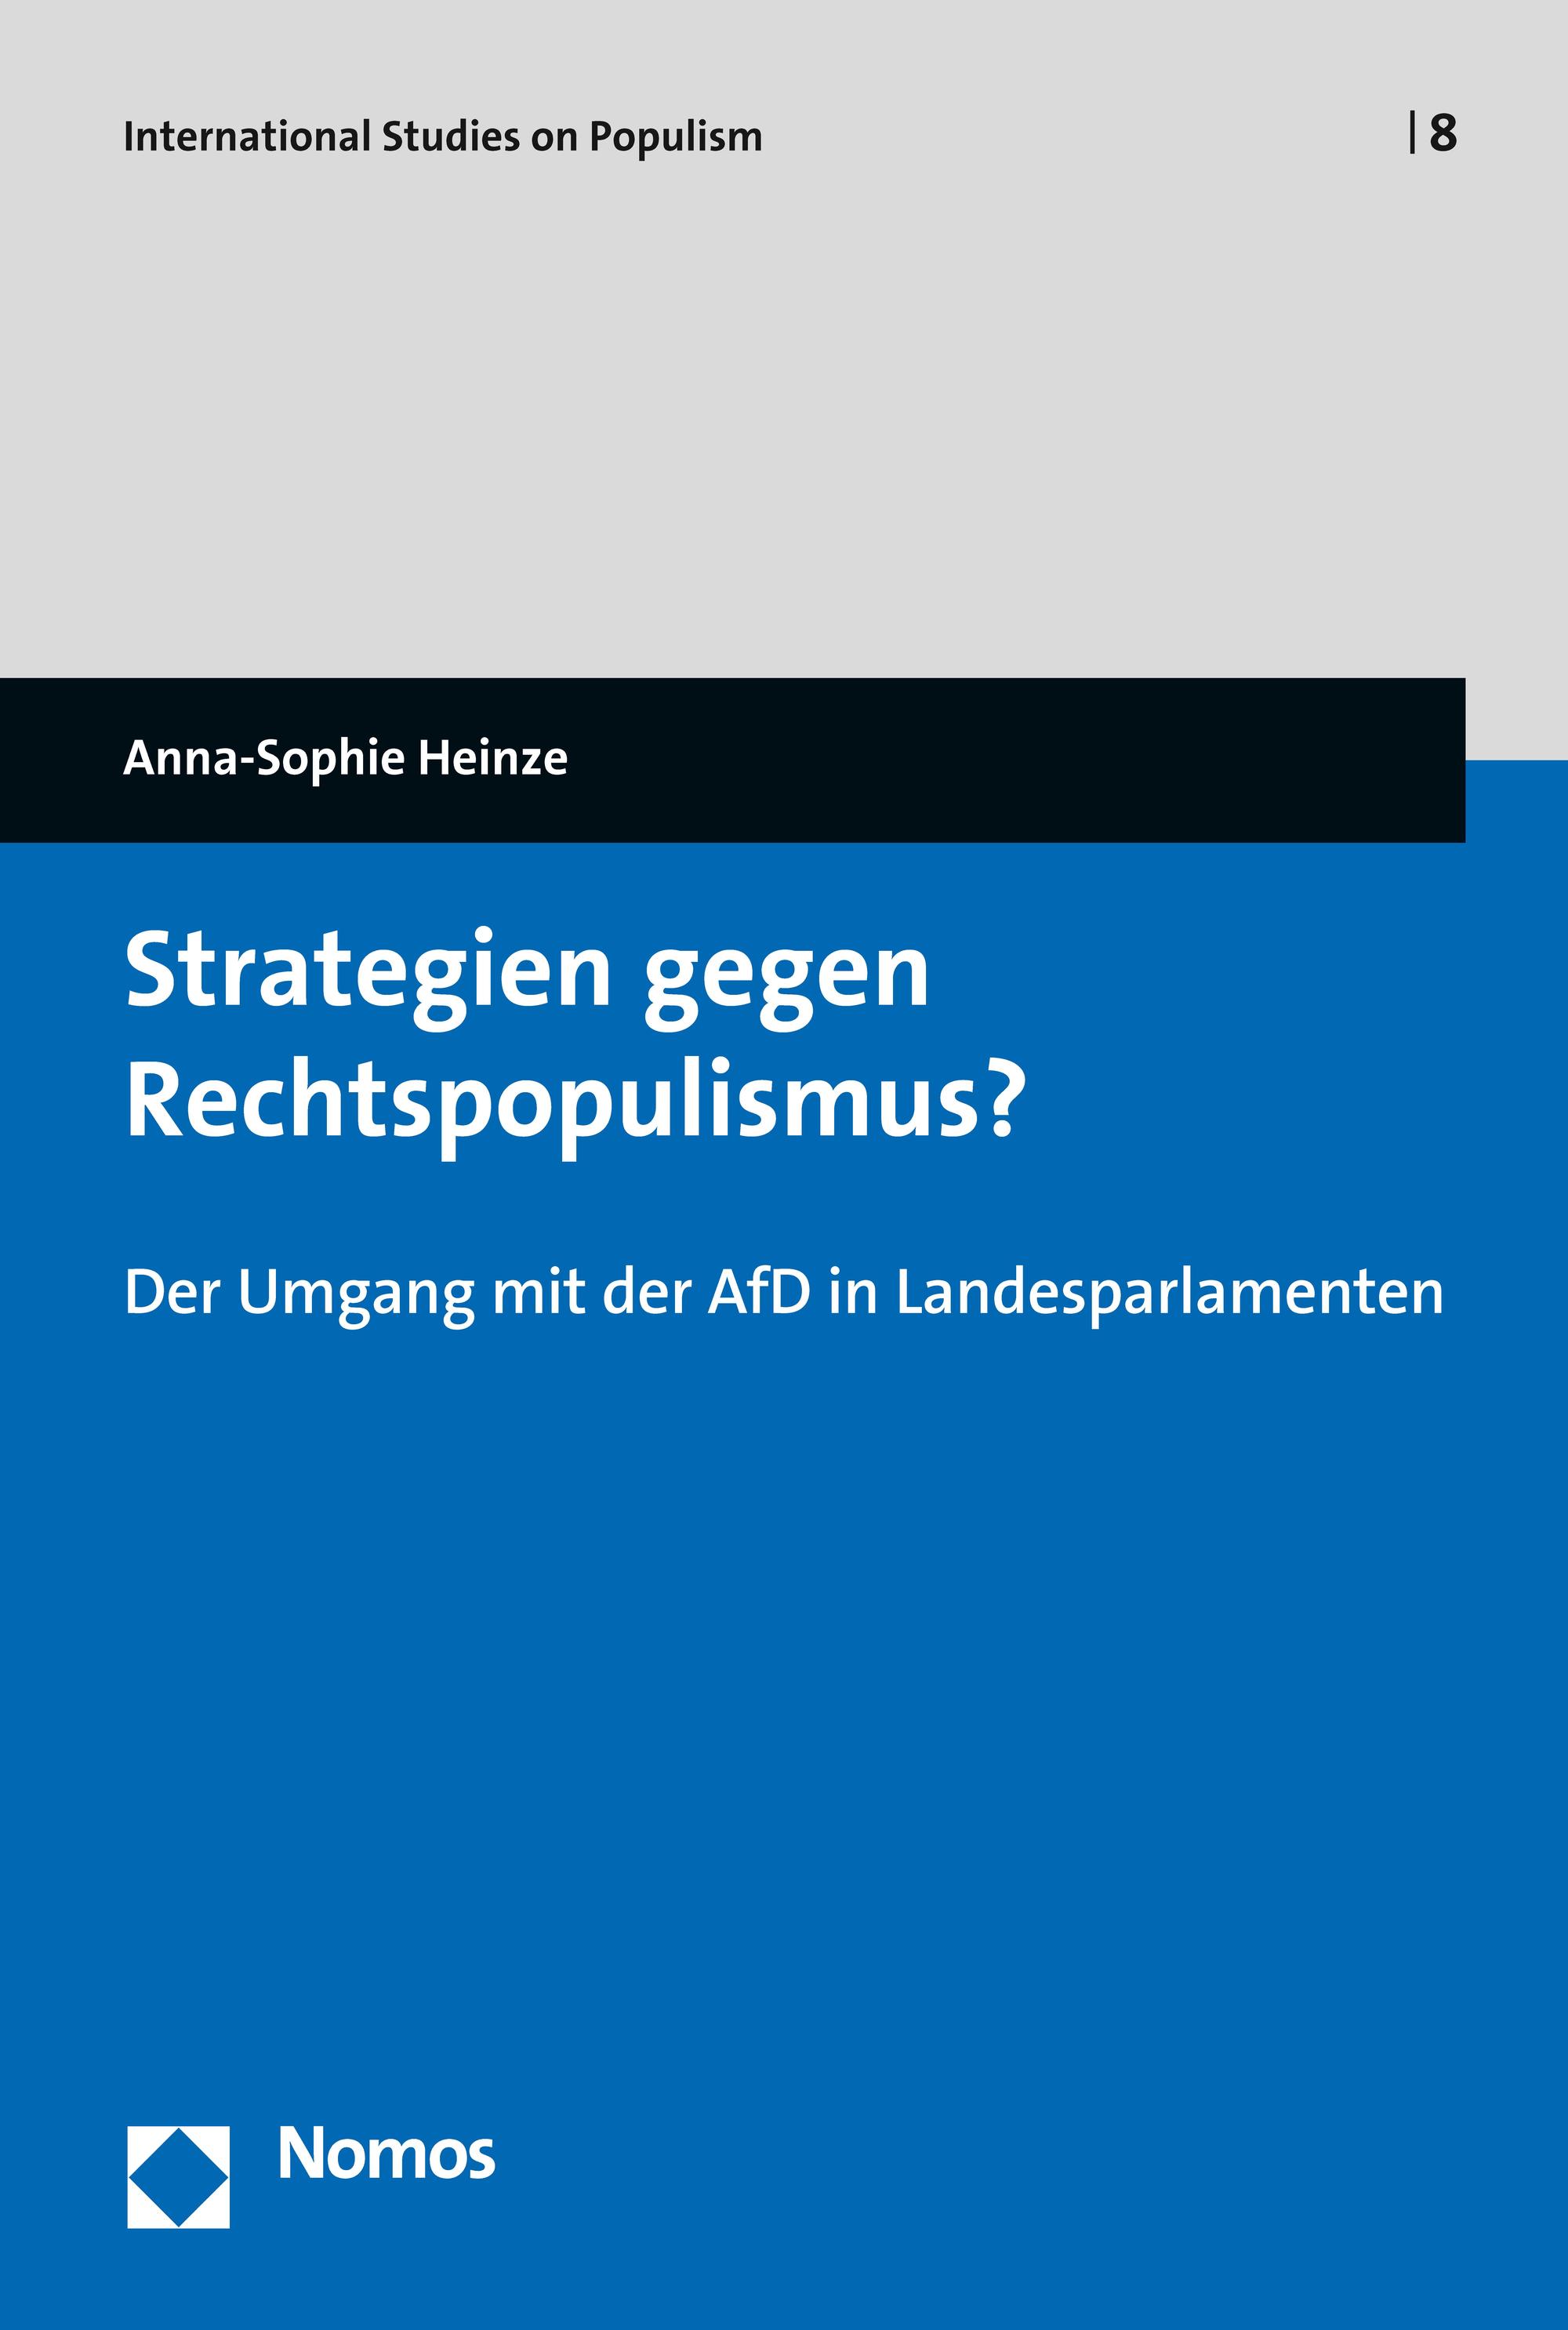 Anna-Sophie Heinze: Strategien gegen Rechtpopulismus? Der Umgang mit der AfD in Landesparlamenten